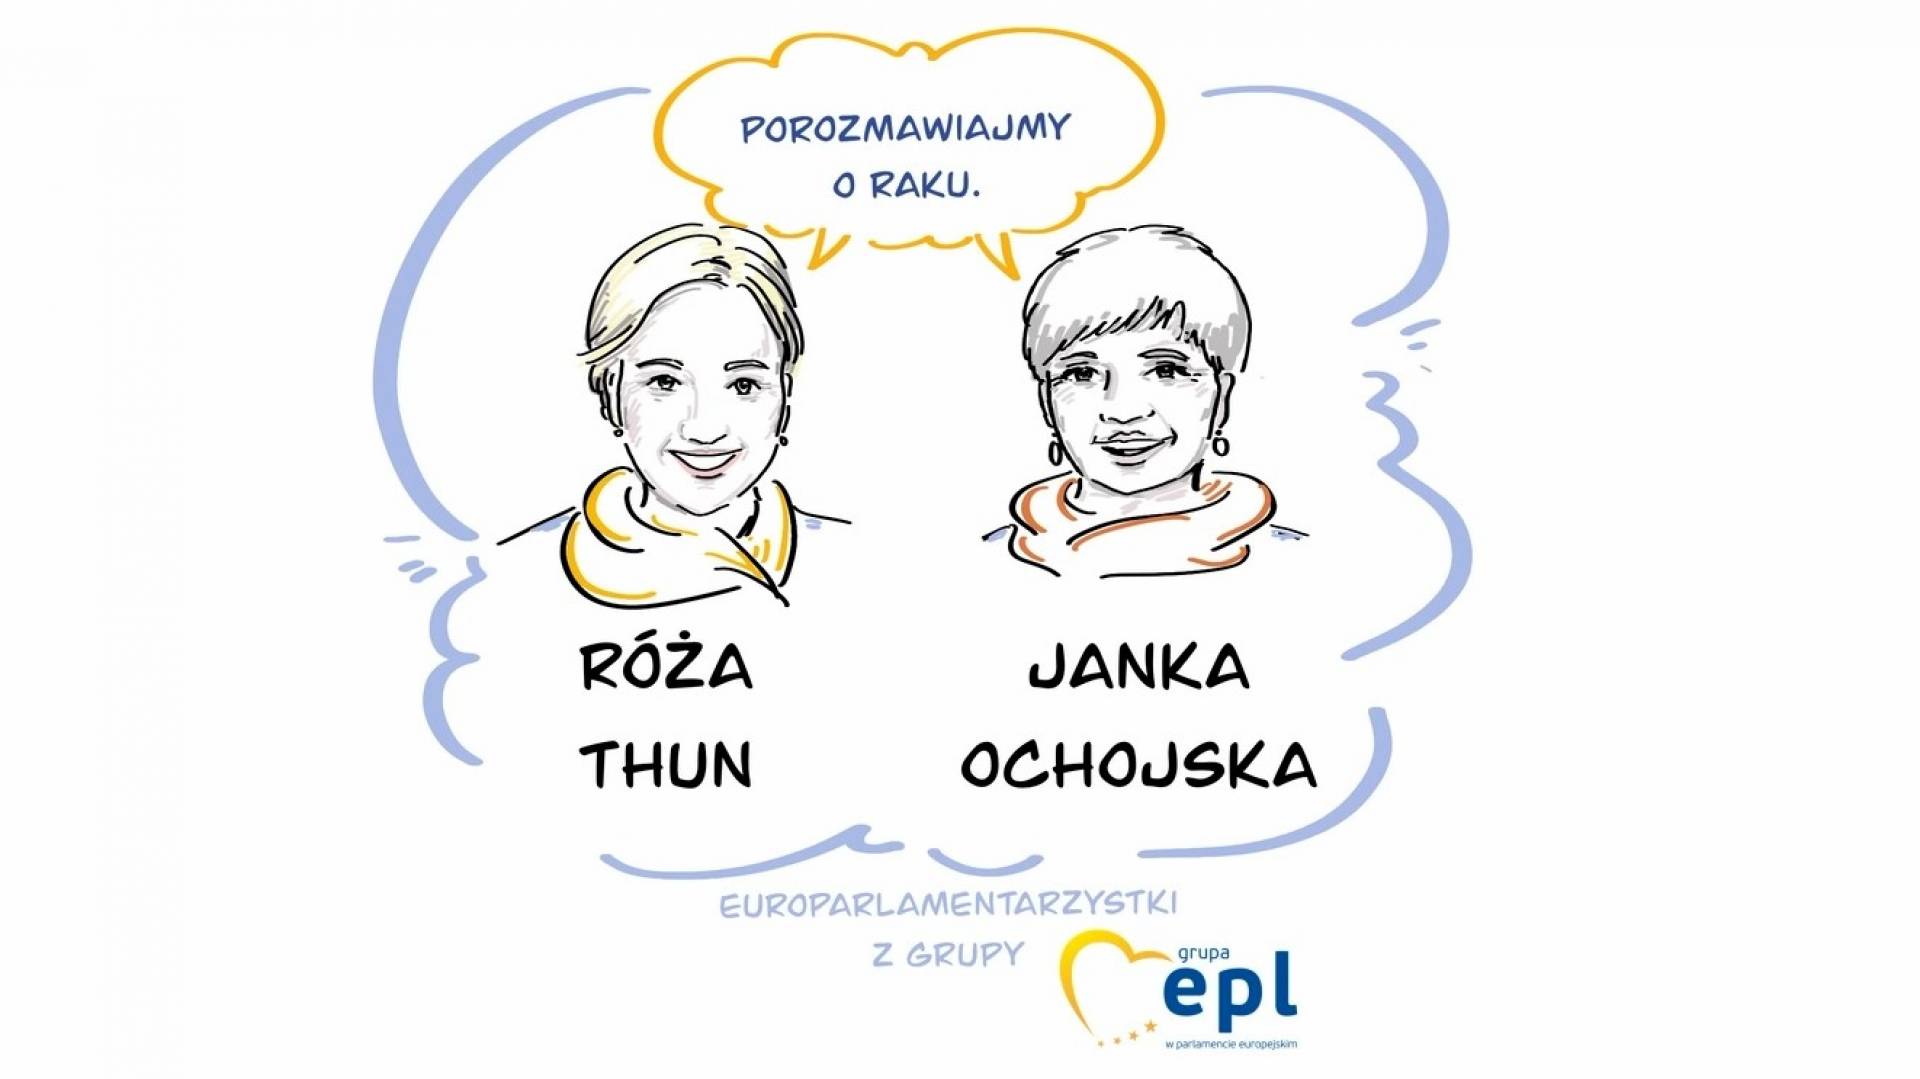 Goście studia Life in Kraków: Janina Ochojska i Róża Thun